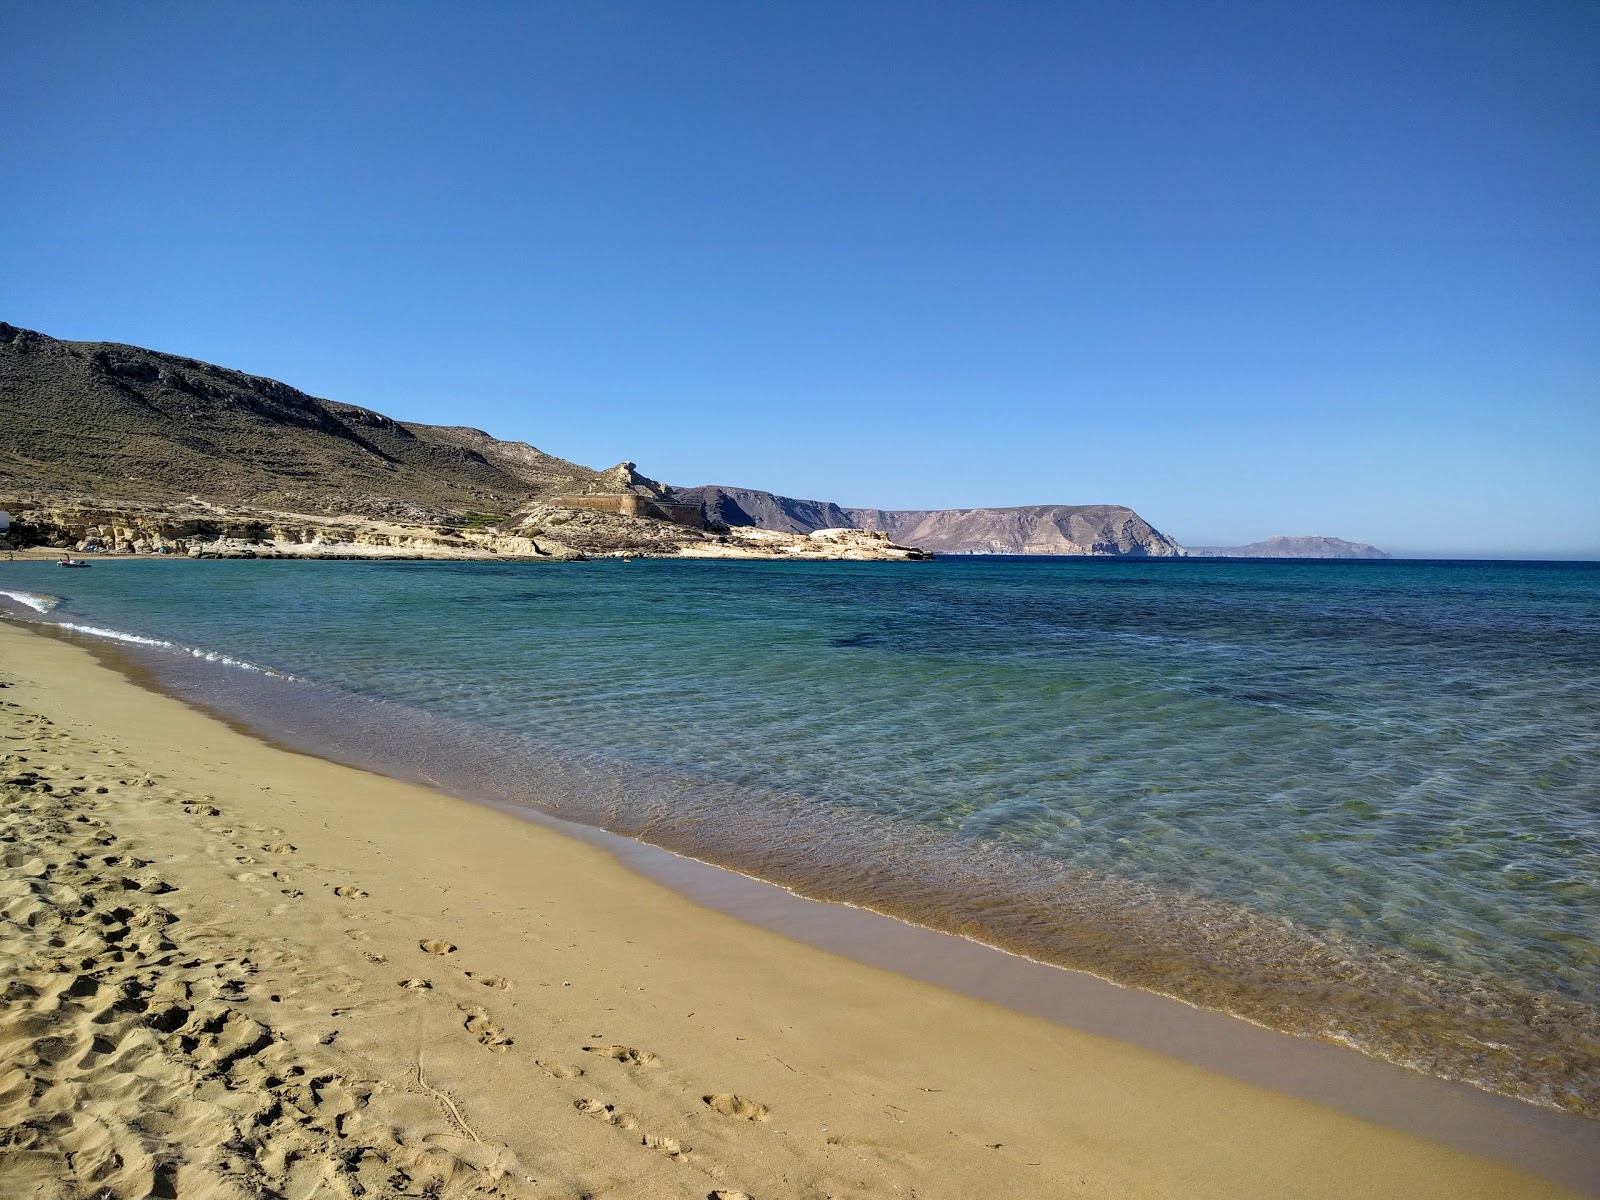 Calilla del Playazo'in fotoğrafı kahverengi kum yüzey ile